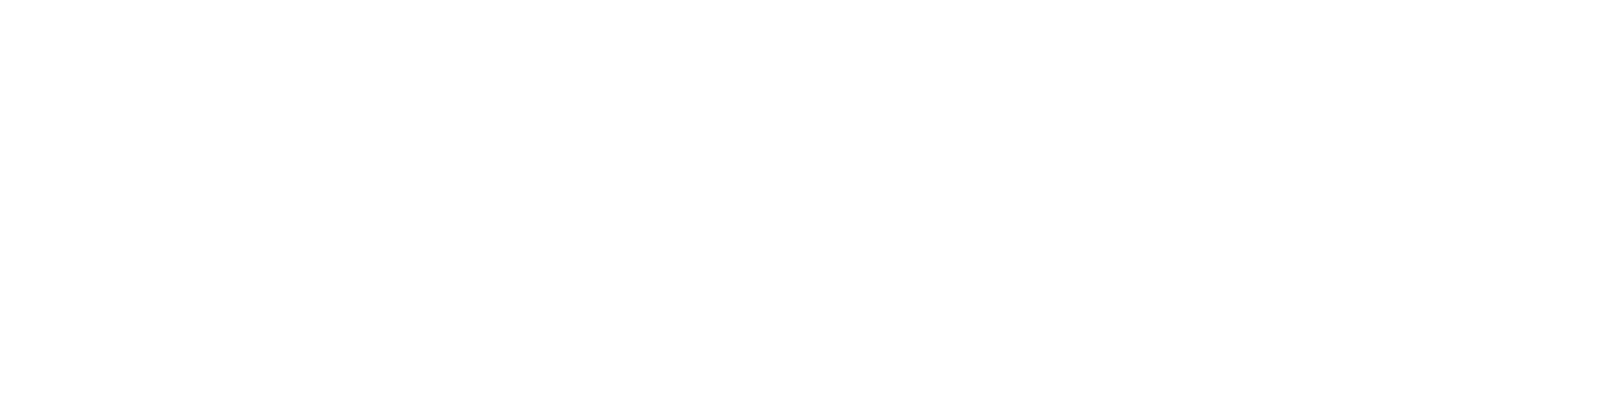 Aerojet Rocketdyne Logo groß für dunkle Hintergründe (transparentes PNG)